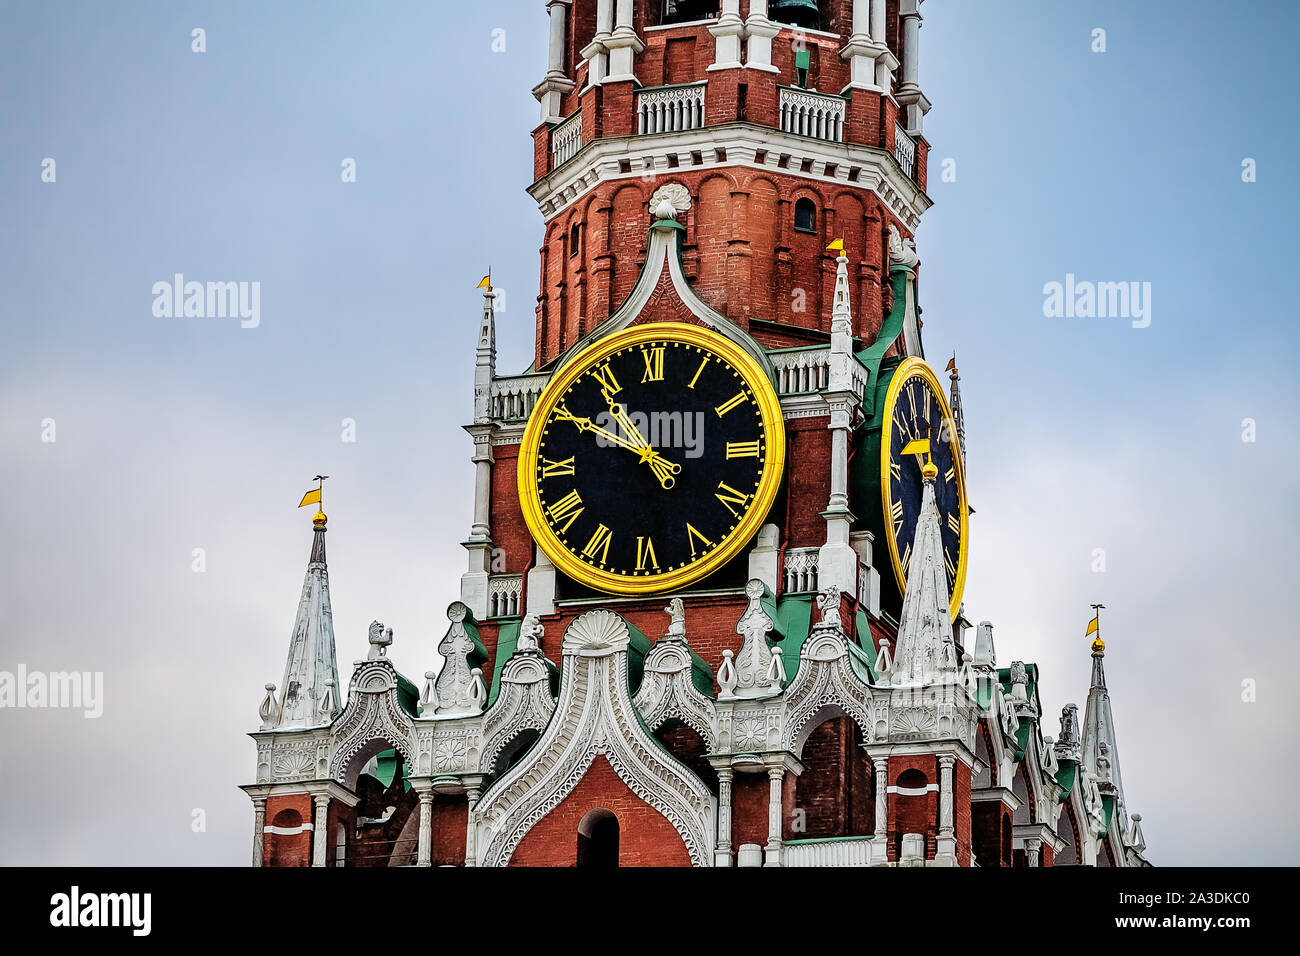 Uhr schlägt auf die Spasskaja Turm der Moskauer Kreml. Roter Platz, Moskau. Russland. Stockfoto